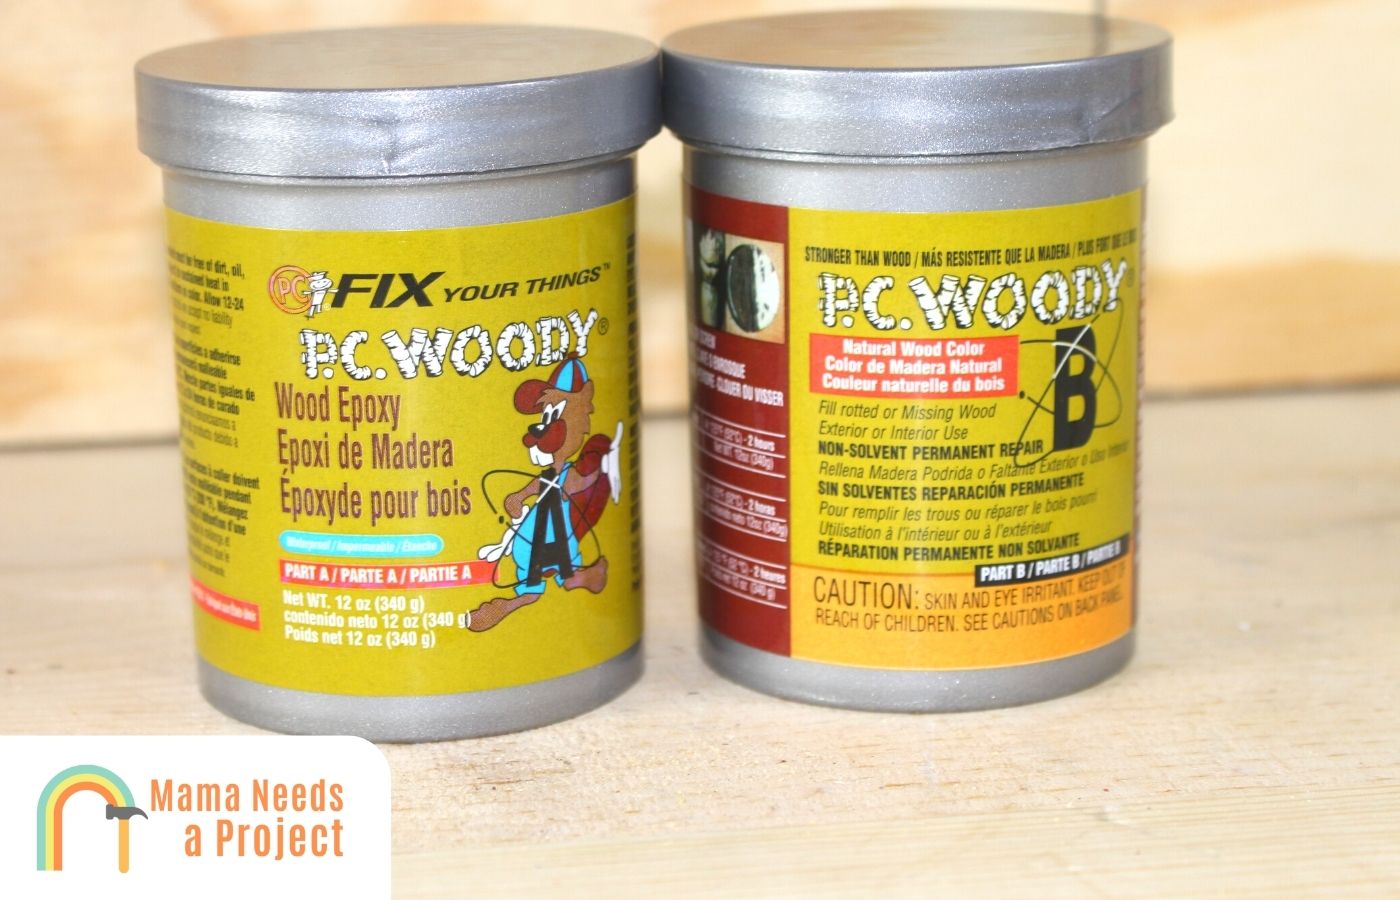 Sparkling wood filler for decks Images, inspirational wood filler for decks  or deck wood filler fascinating epoxy wood filler deck wood filler wood  outdoor wood…